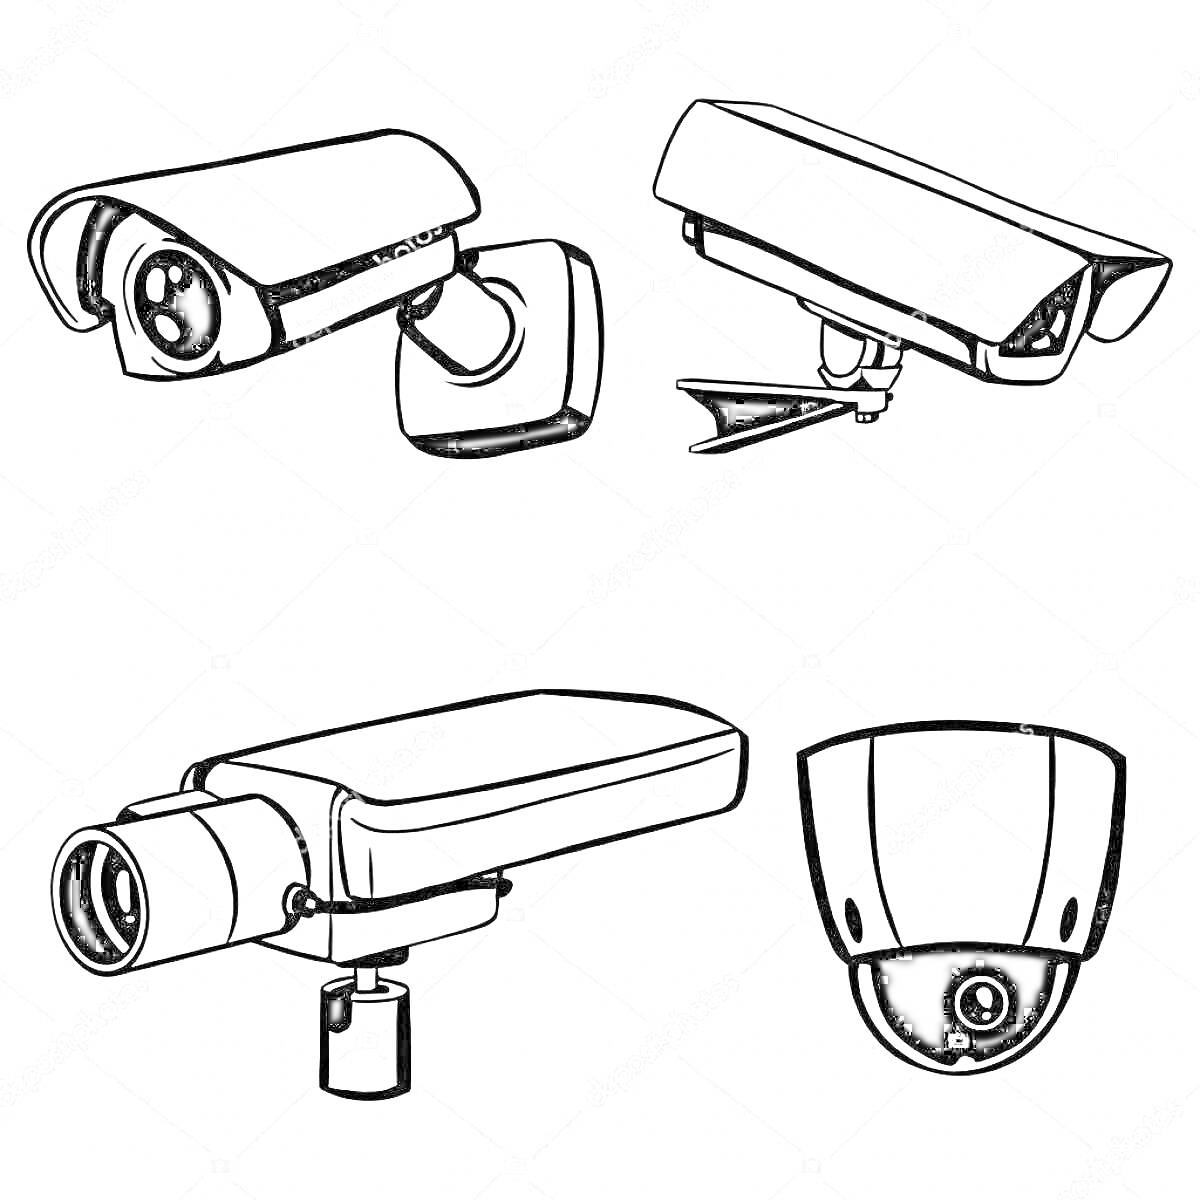 Раскраска Четыре типа видеокамер: камера с защитным козырьком, камера с крепежным кронштейном, видеокамера цилиндрической формы и купольная камера.